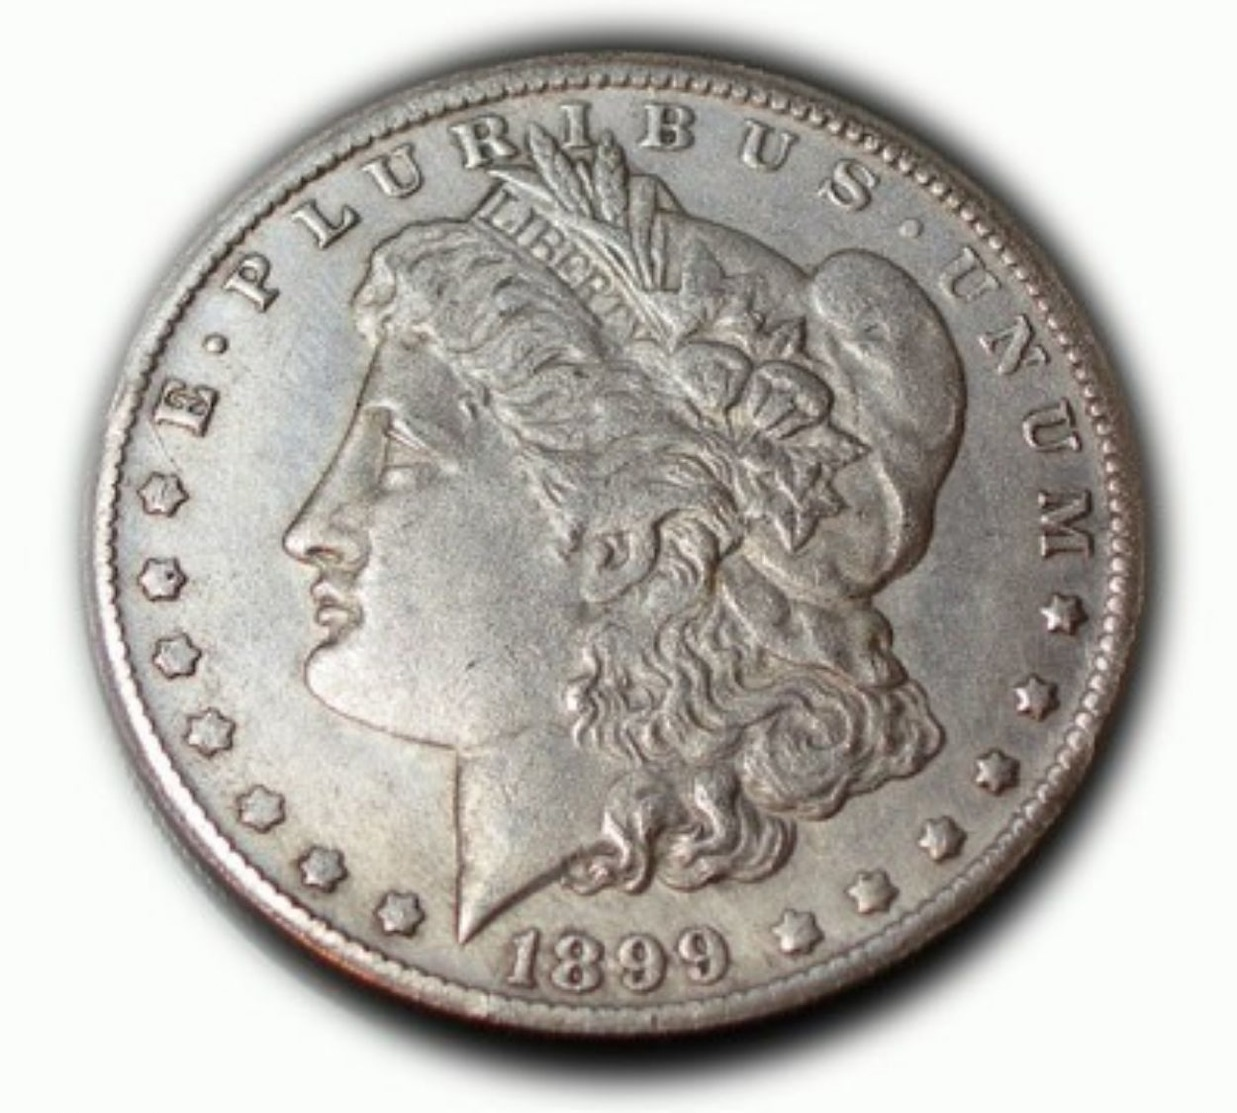 Replica U.S. Morgan Dollar 1899 CC - 1878-1921: Morgan